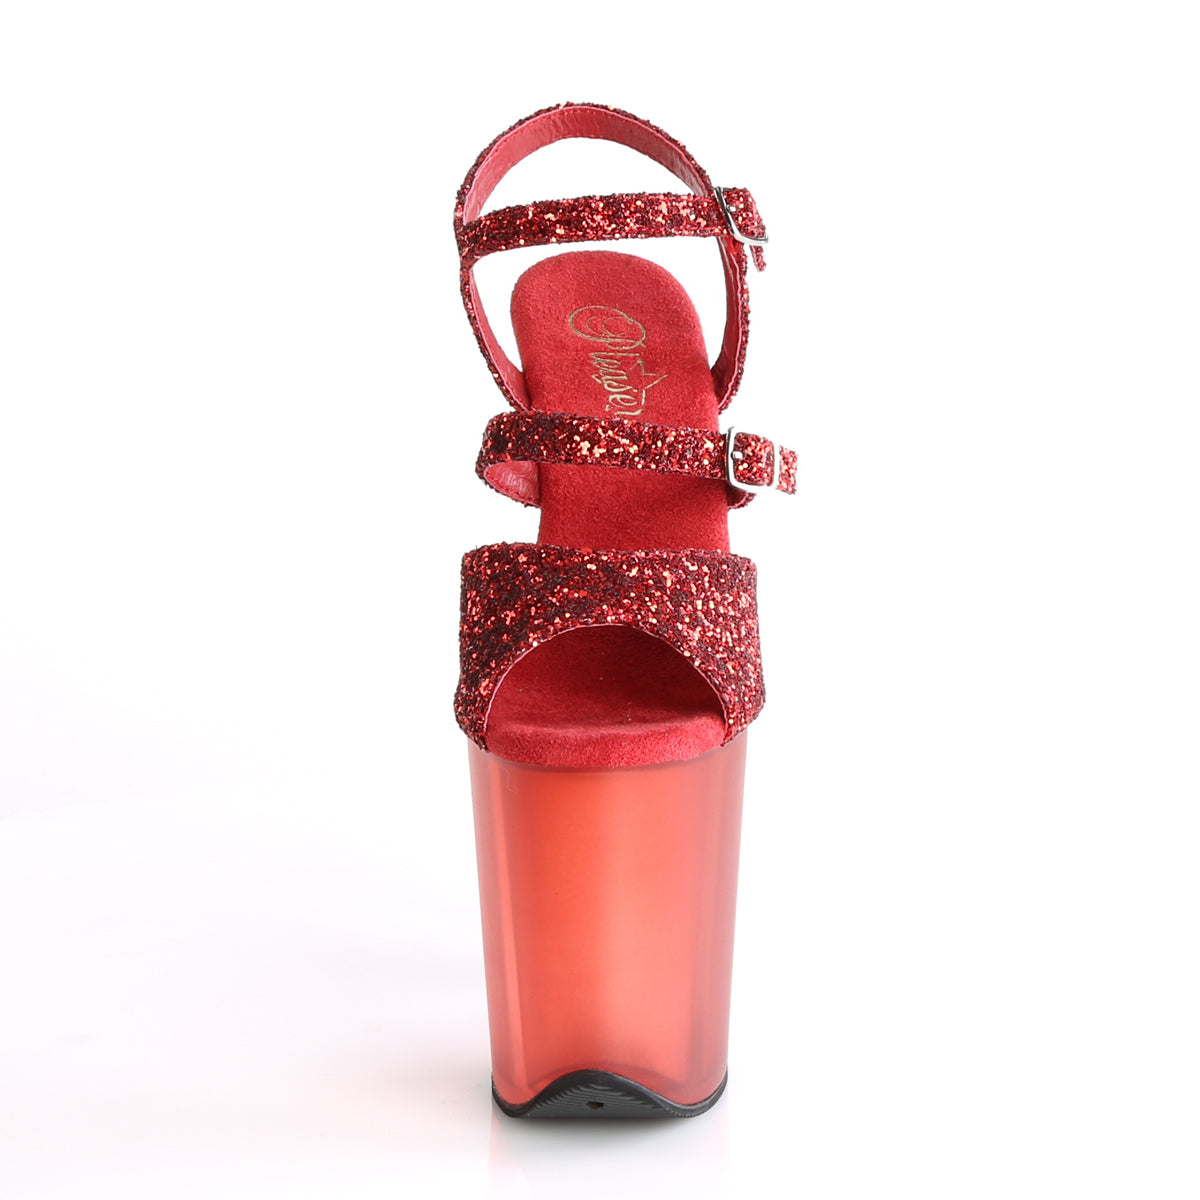 Pleaser Sandali da donna FLAMINGO-874 Glitter rosso / rosso smerigliato